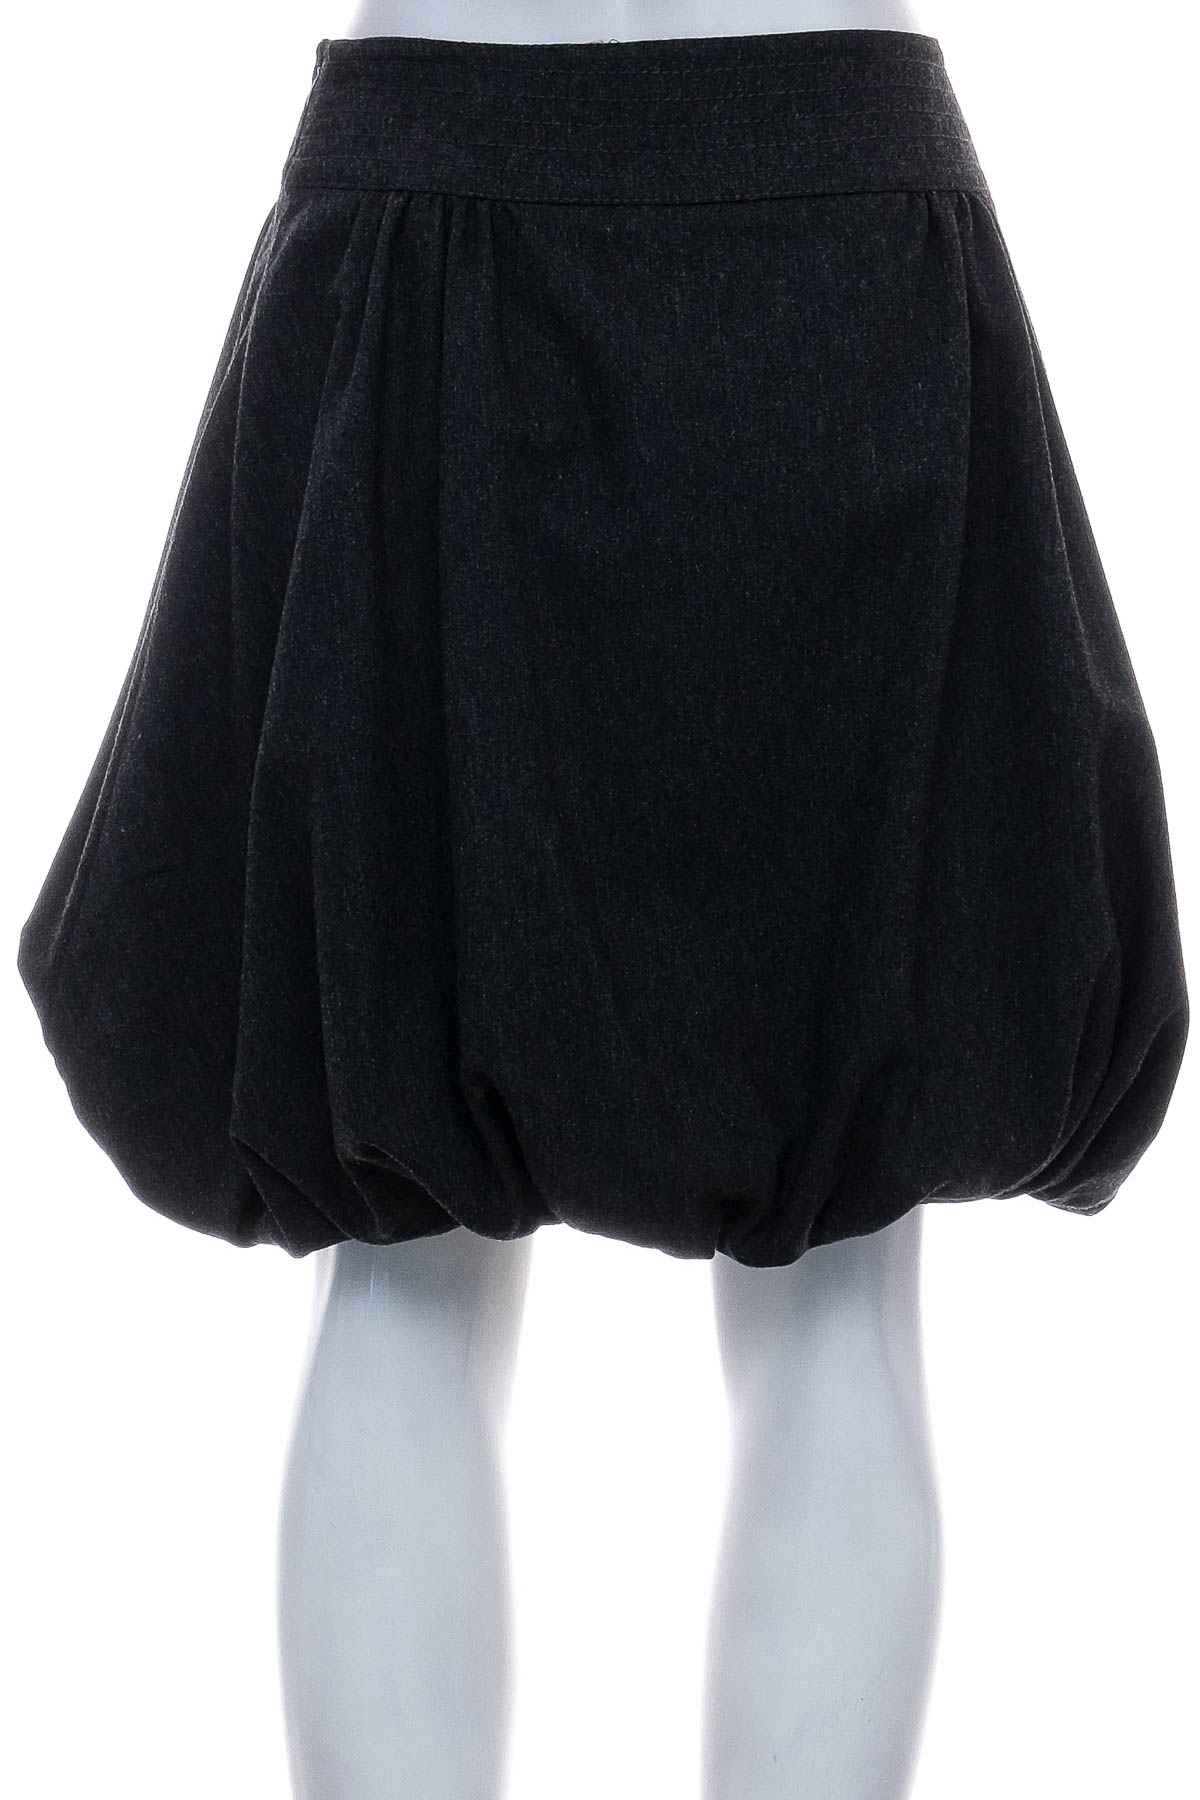 Skirt - Blumarine - 1